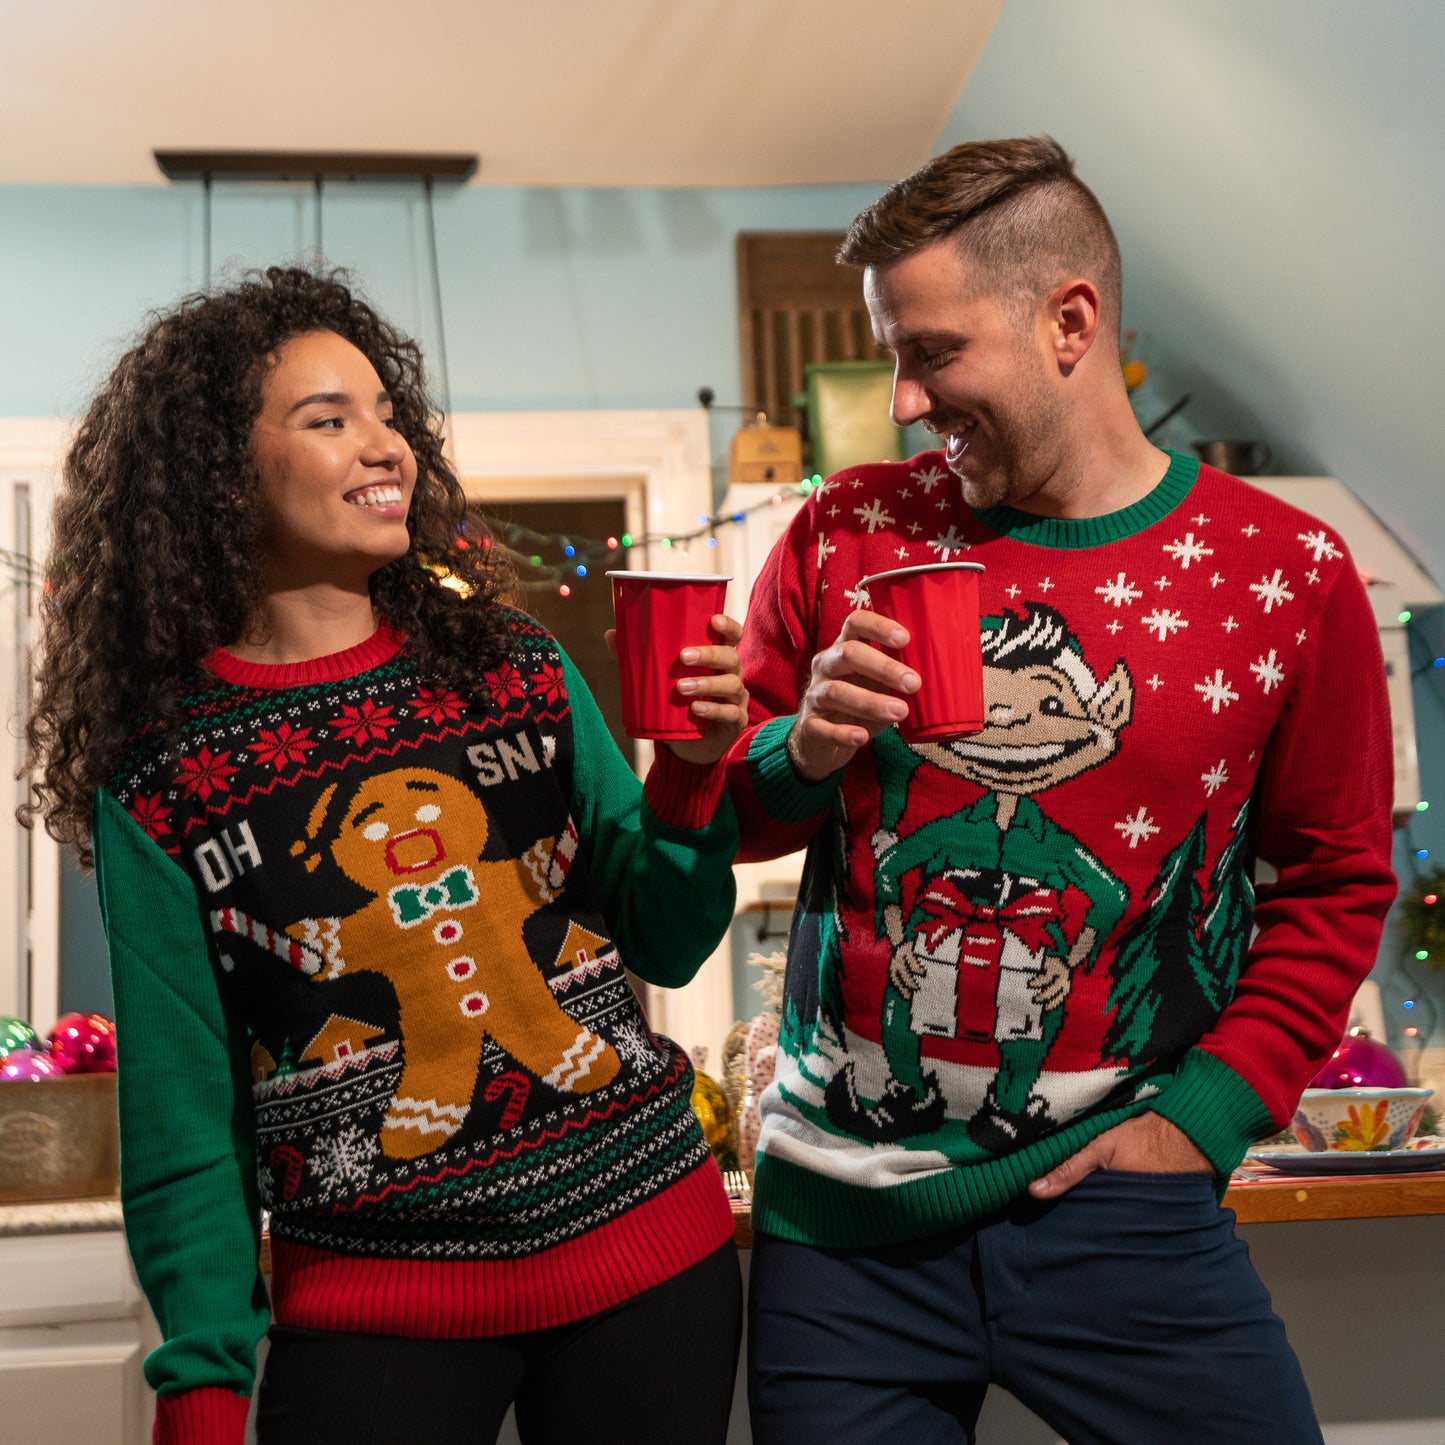 Elf Naughty Gift Box Ugly Christmas Sweater Unisex